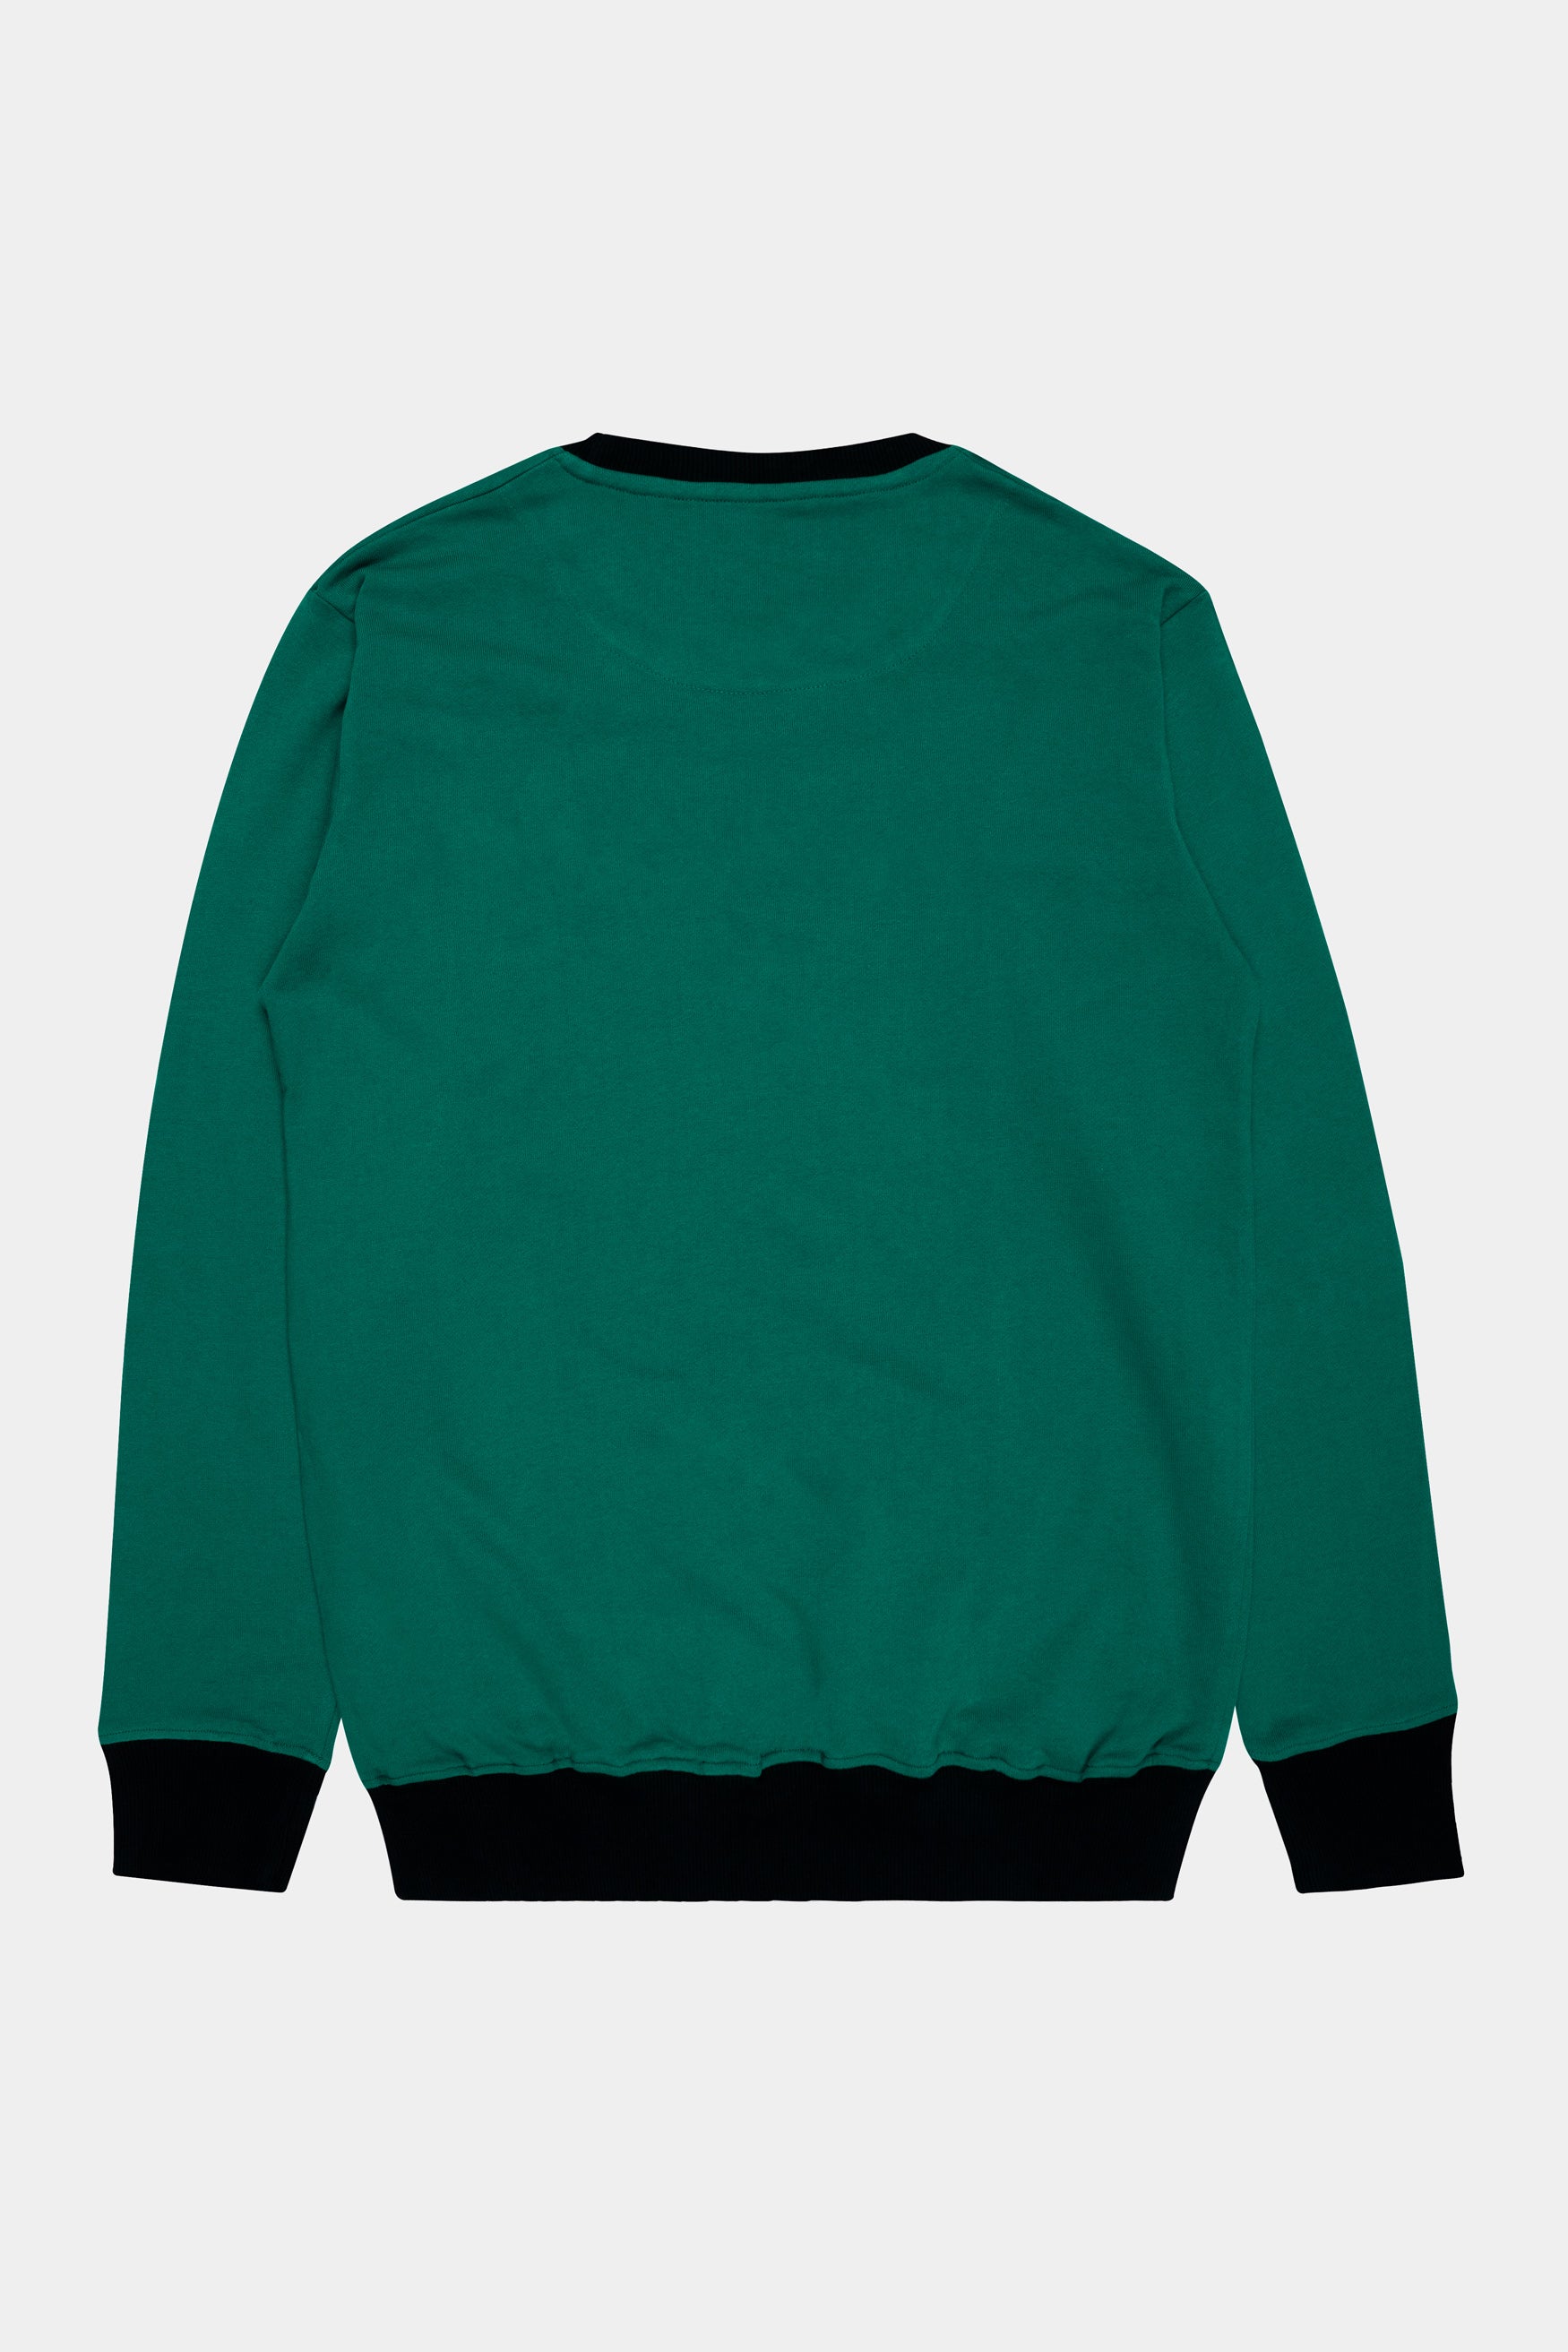 Sherpa Green Premium Cotton Sweatshirt